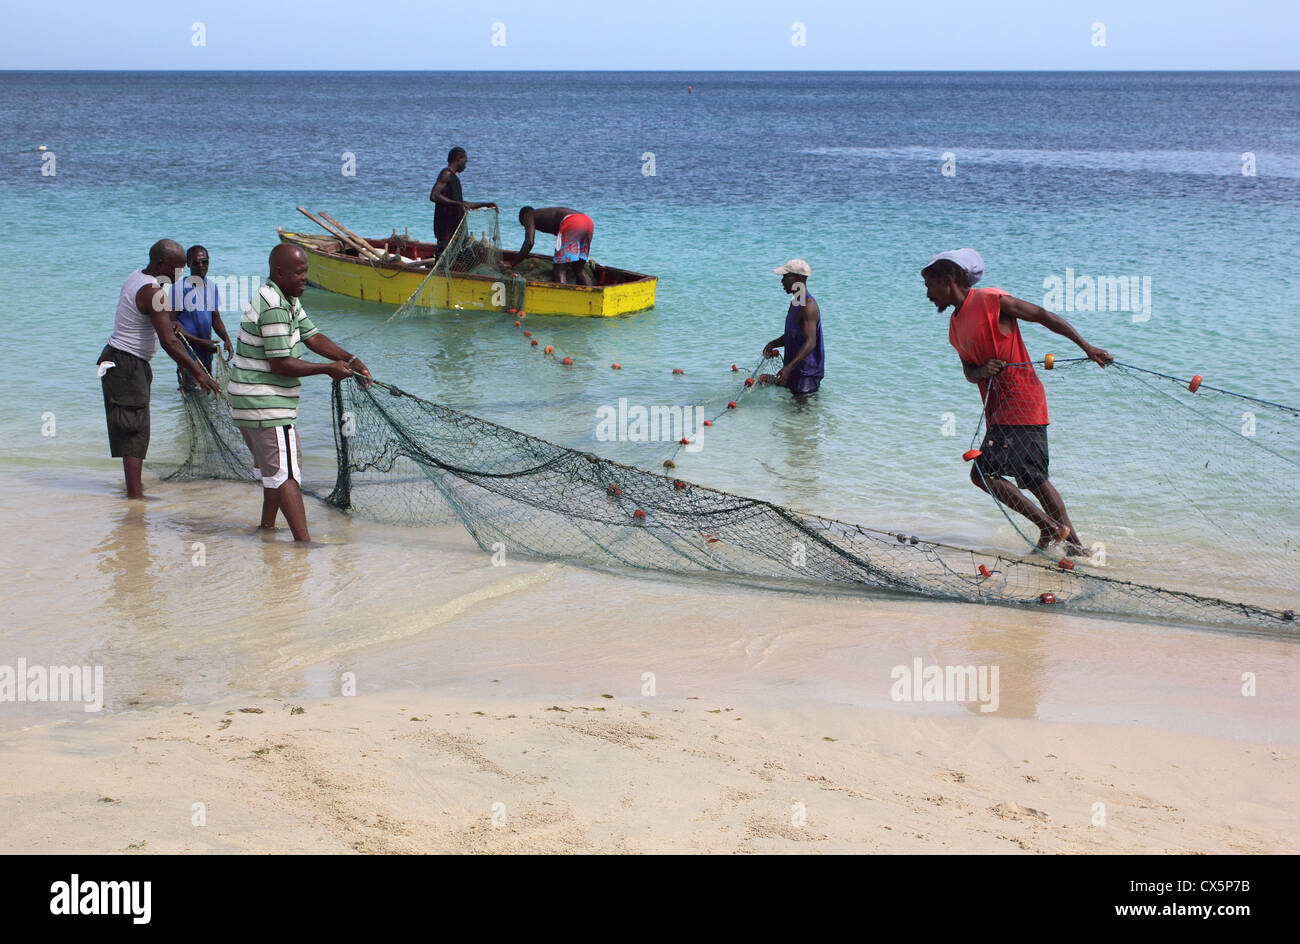 Les pêcheurs des Caraïbes Contrôle et remise à zéro leurs filets dans leur bateau, plage de Grand'Anse, La Grenade. West Indies. Banque D'Images